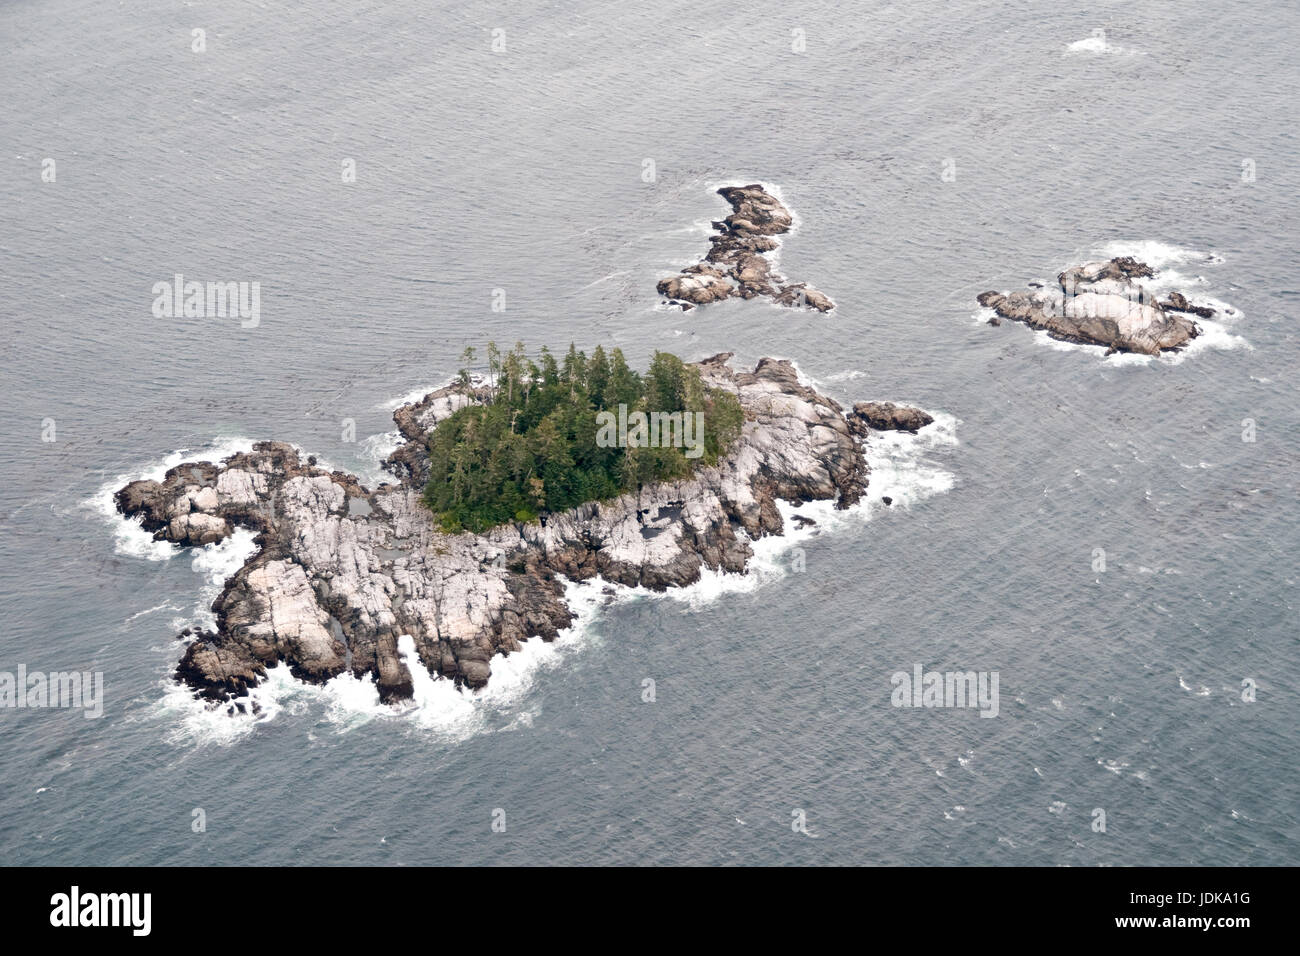 Vista aerea di un piccolo isolotto disabitato roccioso a bassa marea nel Pacifico del Nord nella Great Bear Rainforest, costa centrale, British Columbia, Canada. Foto Stock